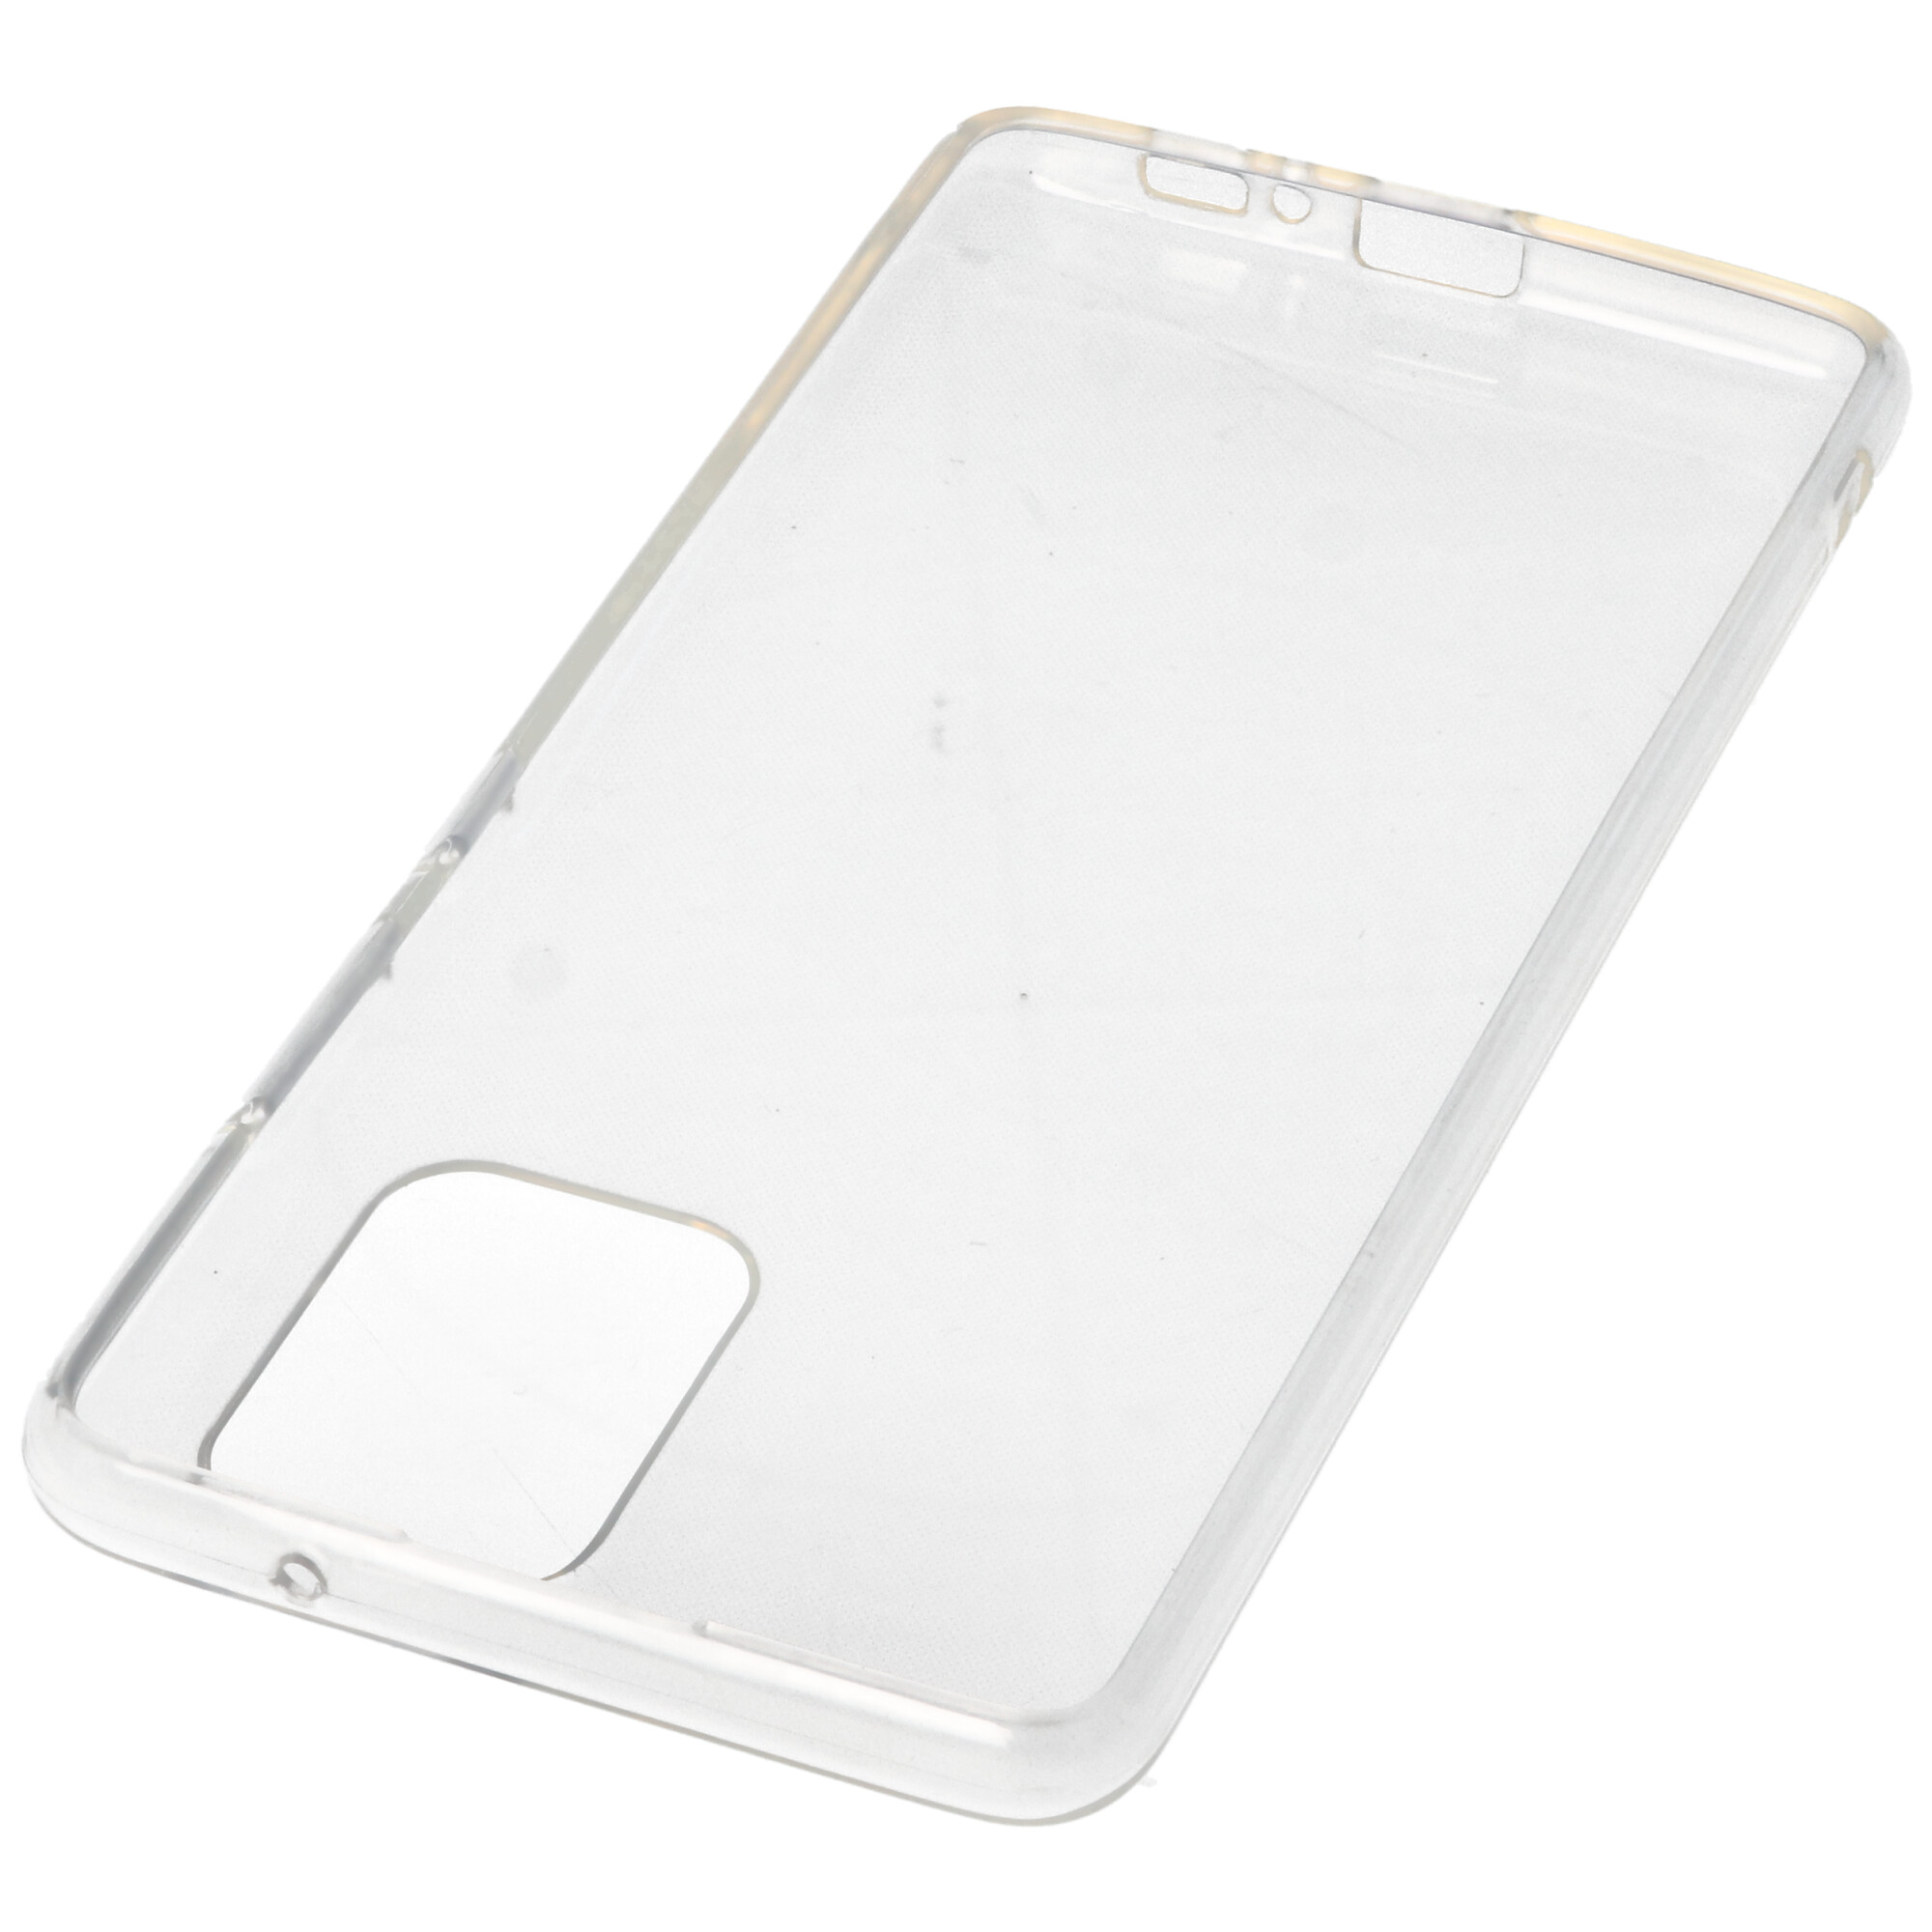 Hülle passend für Samsung Galaxy S10 Lite - transparente Schutzhülle, Anti-Gelb Luftkissen Fallschutz Silikon Handyhülle robustes TPU Case